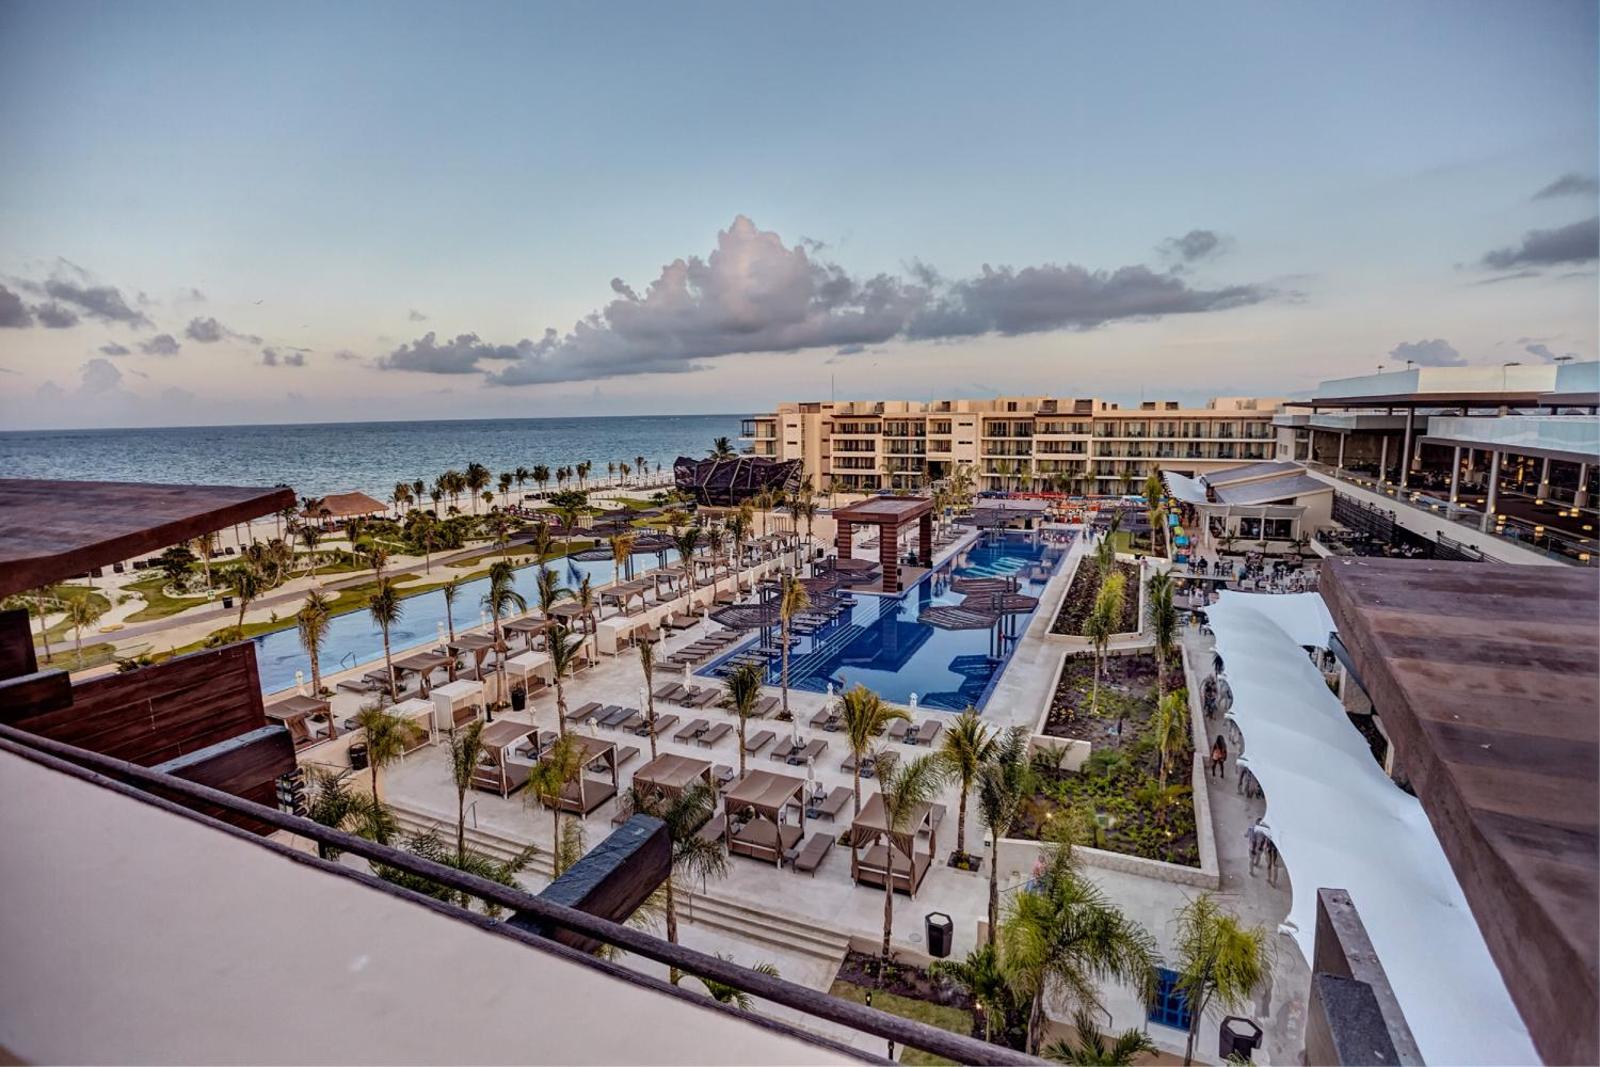 Royalton Riviera Cancun Resort Spa - All Inclusive